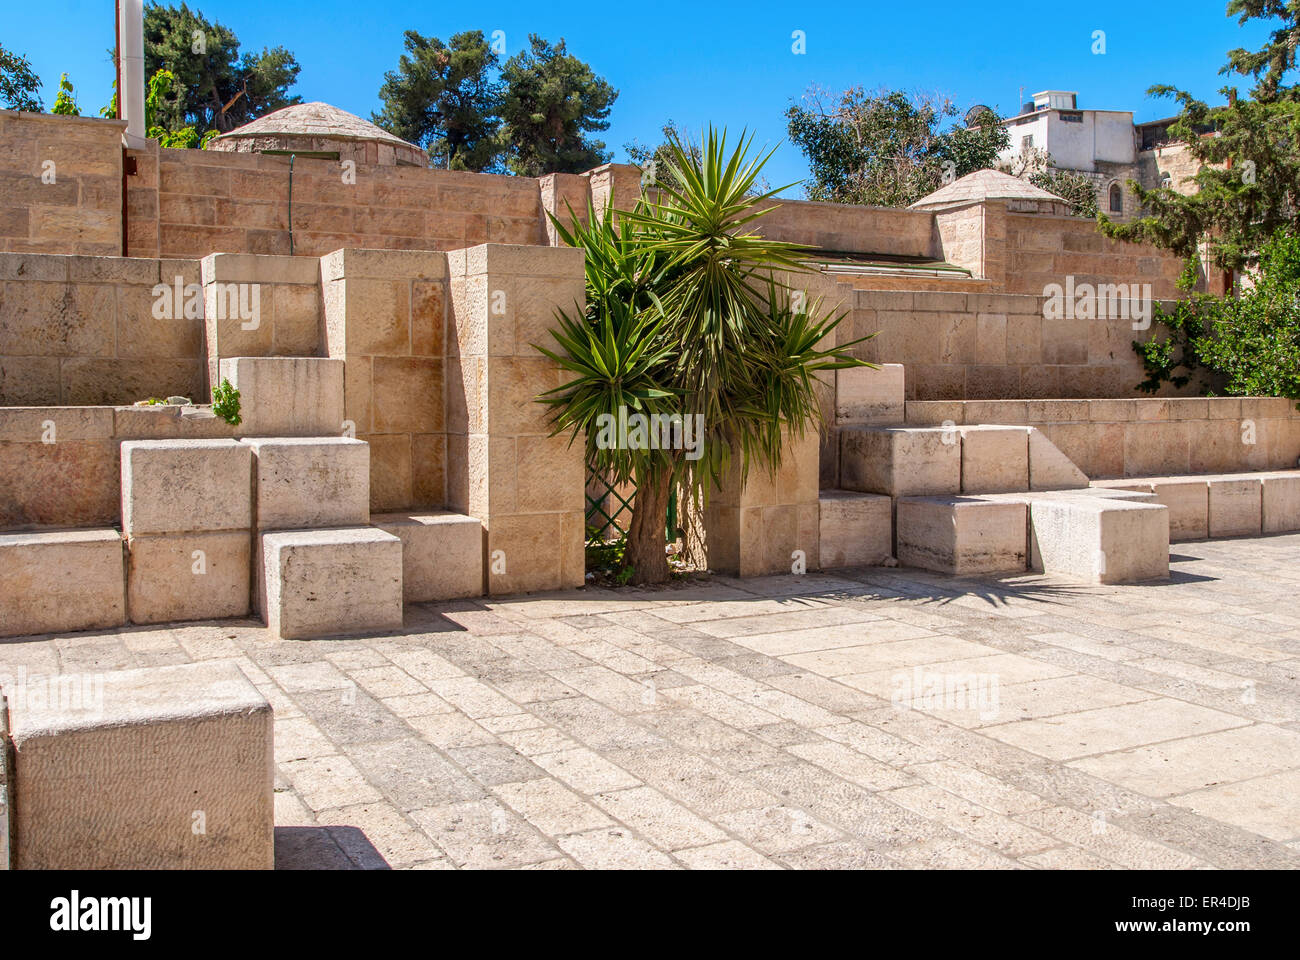 Las calles de piedra de la antigua Jerusalén, Israel Foto de stock